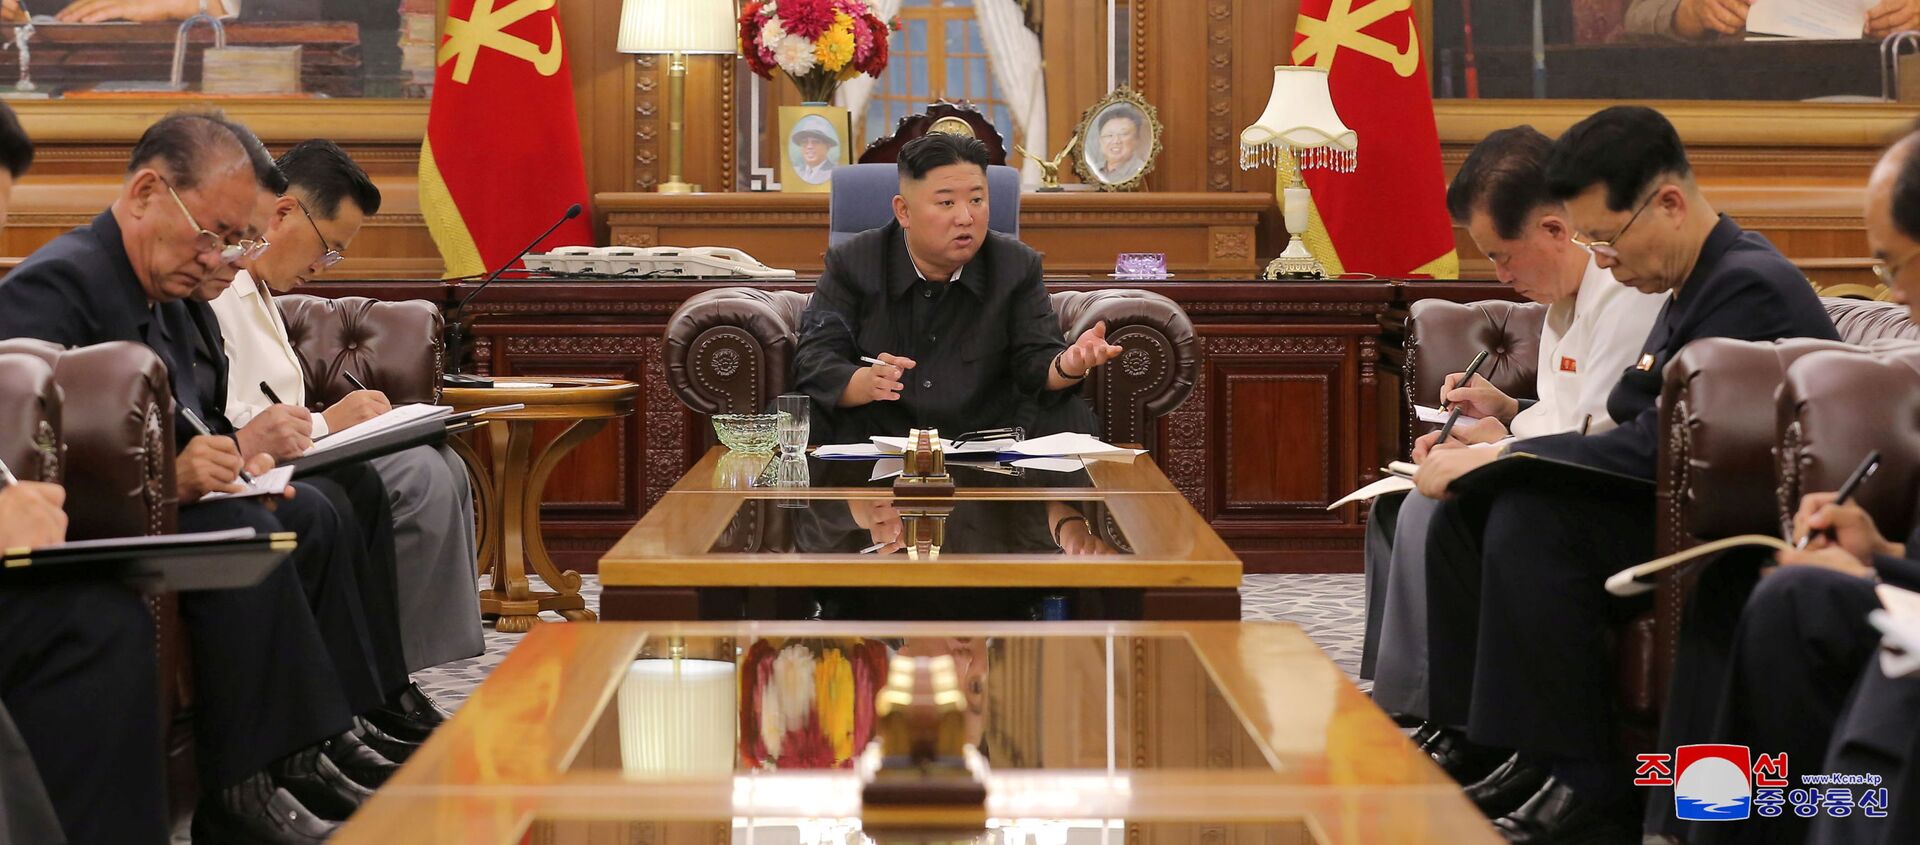 Nhà lãnh đạo Triều Tiên Kim Jong-un trong cuộc gặp với các quan chức cấp cao. - Sputnik Việt Nam, 1920, 10.06.2021